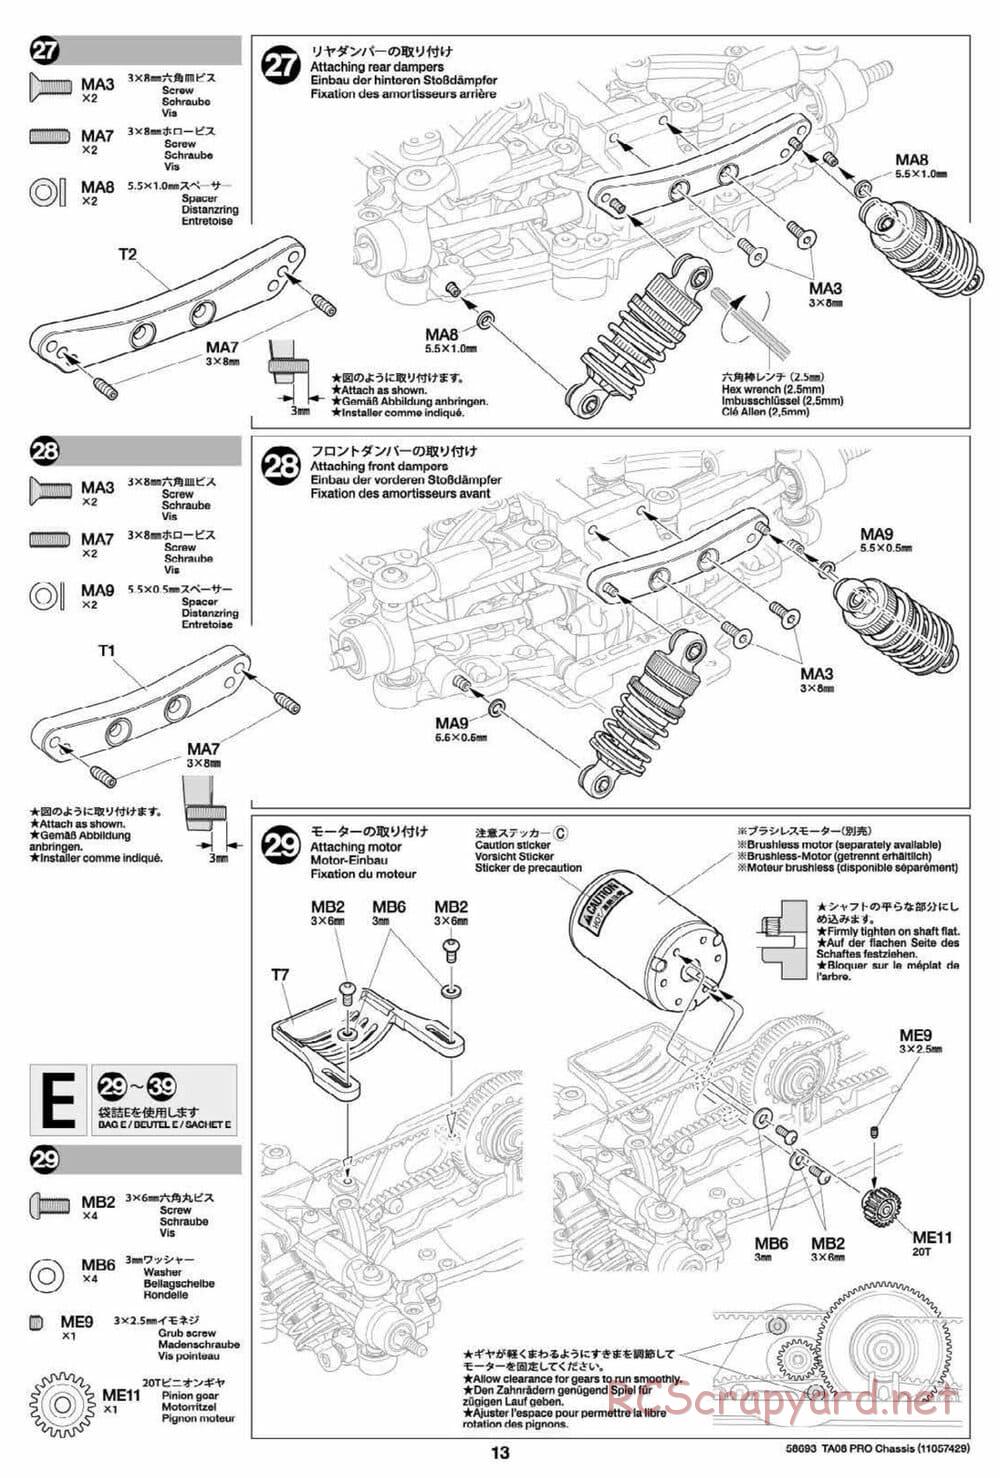 Tamiya - TA08 Pro Chassis - Manual - Page 13